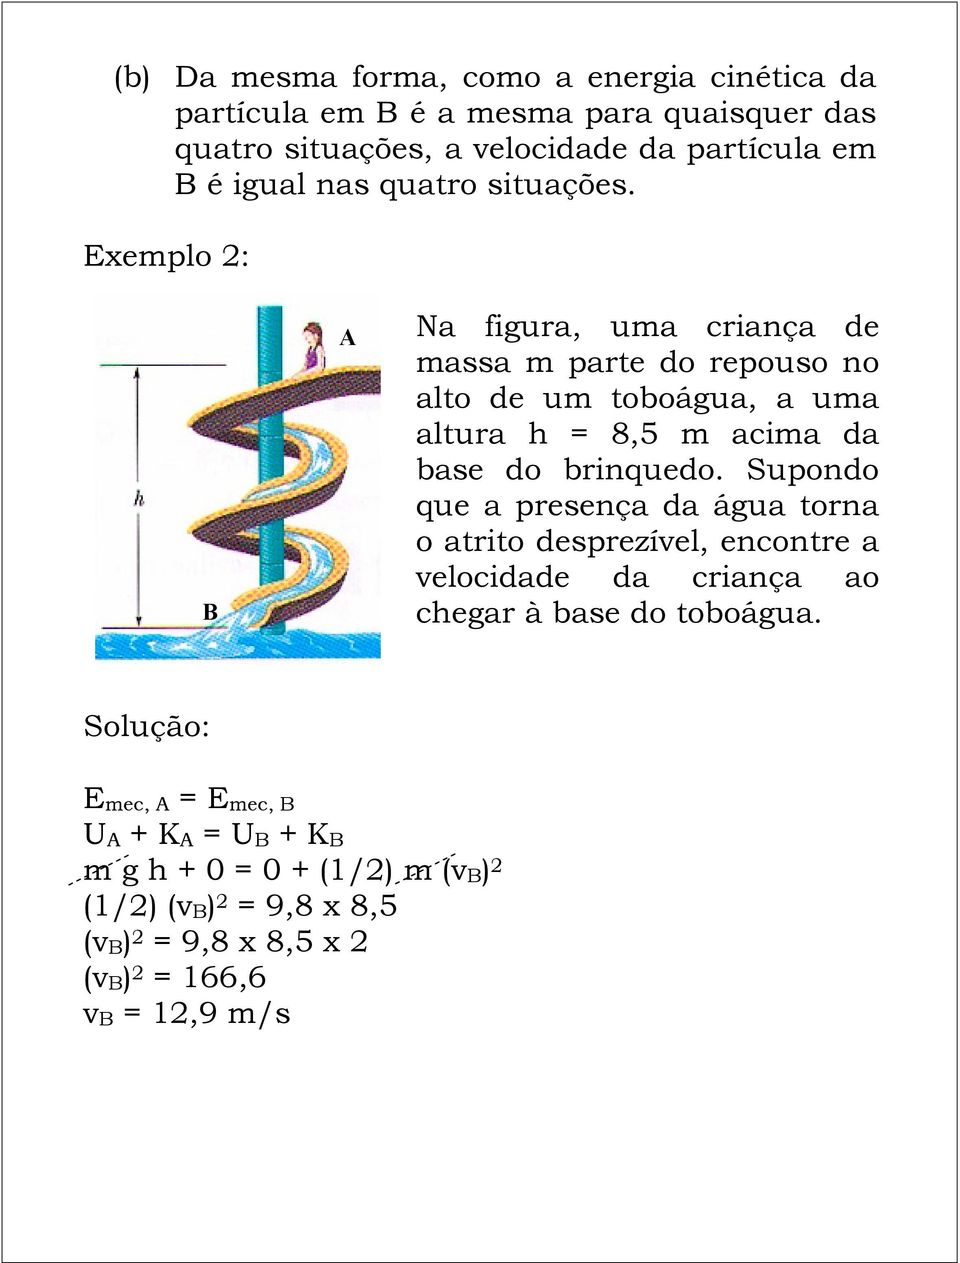 Exemplo 2: B A Na figura, uma criança de massa m parte do repouso no alto de um toboágua, a uma altura h = 8,5 m acima da base do brinquedo.